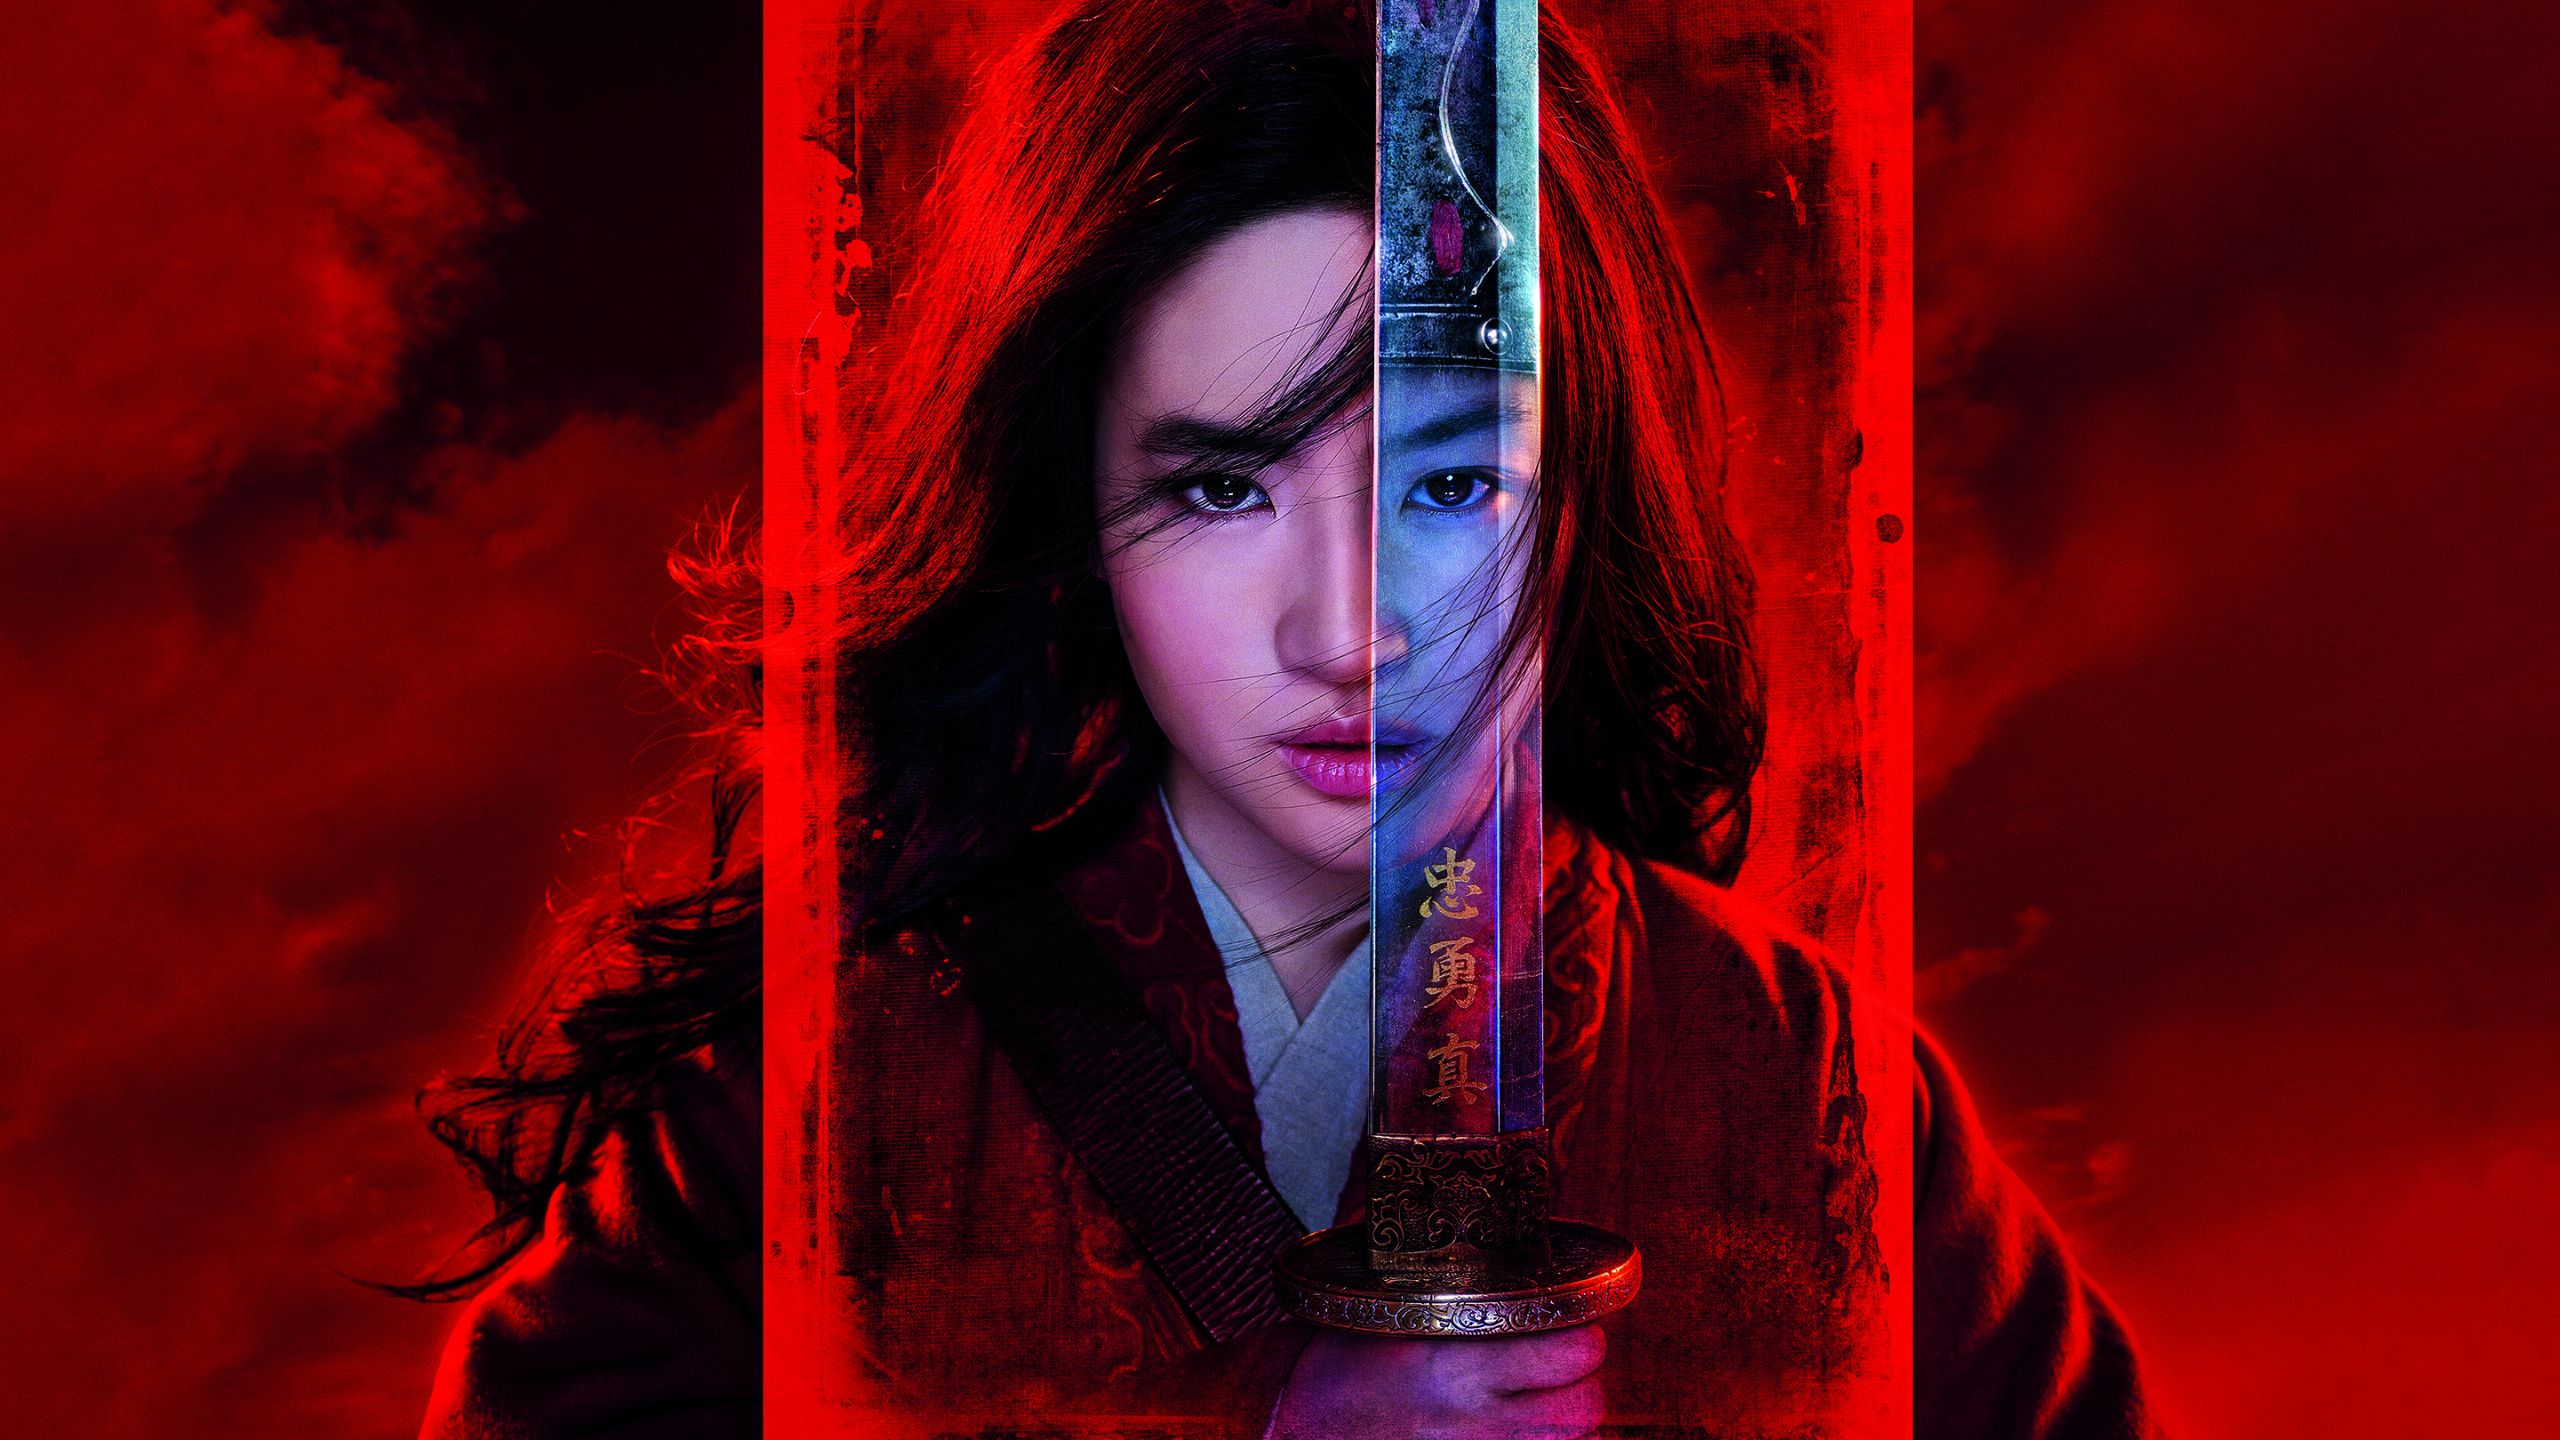 Download Mulan, Liu Yifei, Disney movie wallpaper, 2560x Dual Wide, Widescreen 16: Widescreen